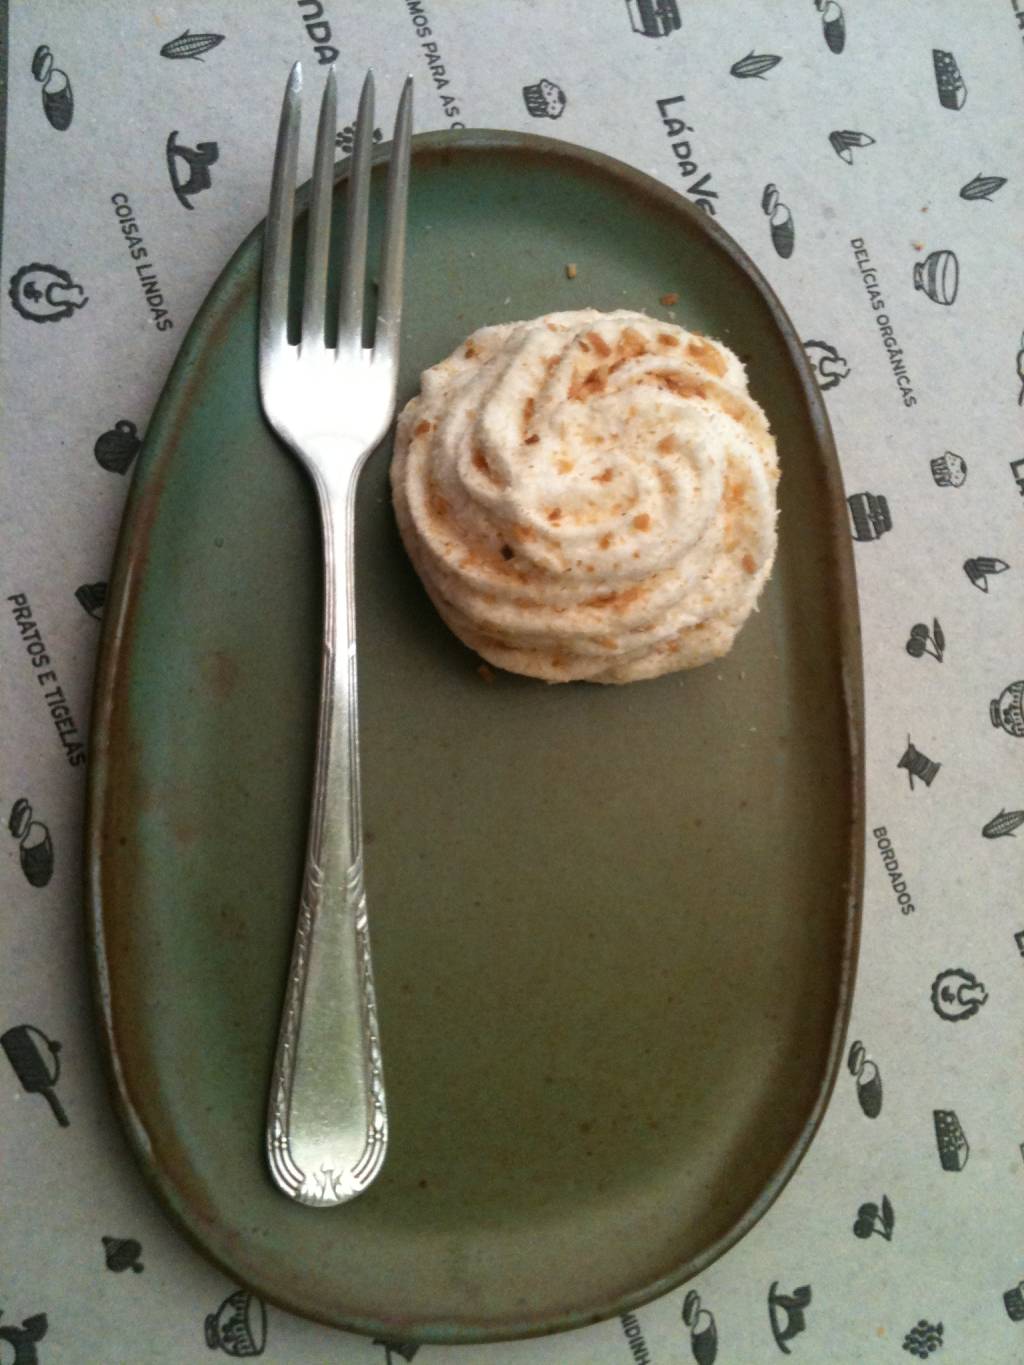 Taça de vidro com sorvete sobre base redonda de madeira, com pedaço de goiabada, pedaço de queijo e pequena faca ao lado, sobre mesa de madeira branca